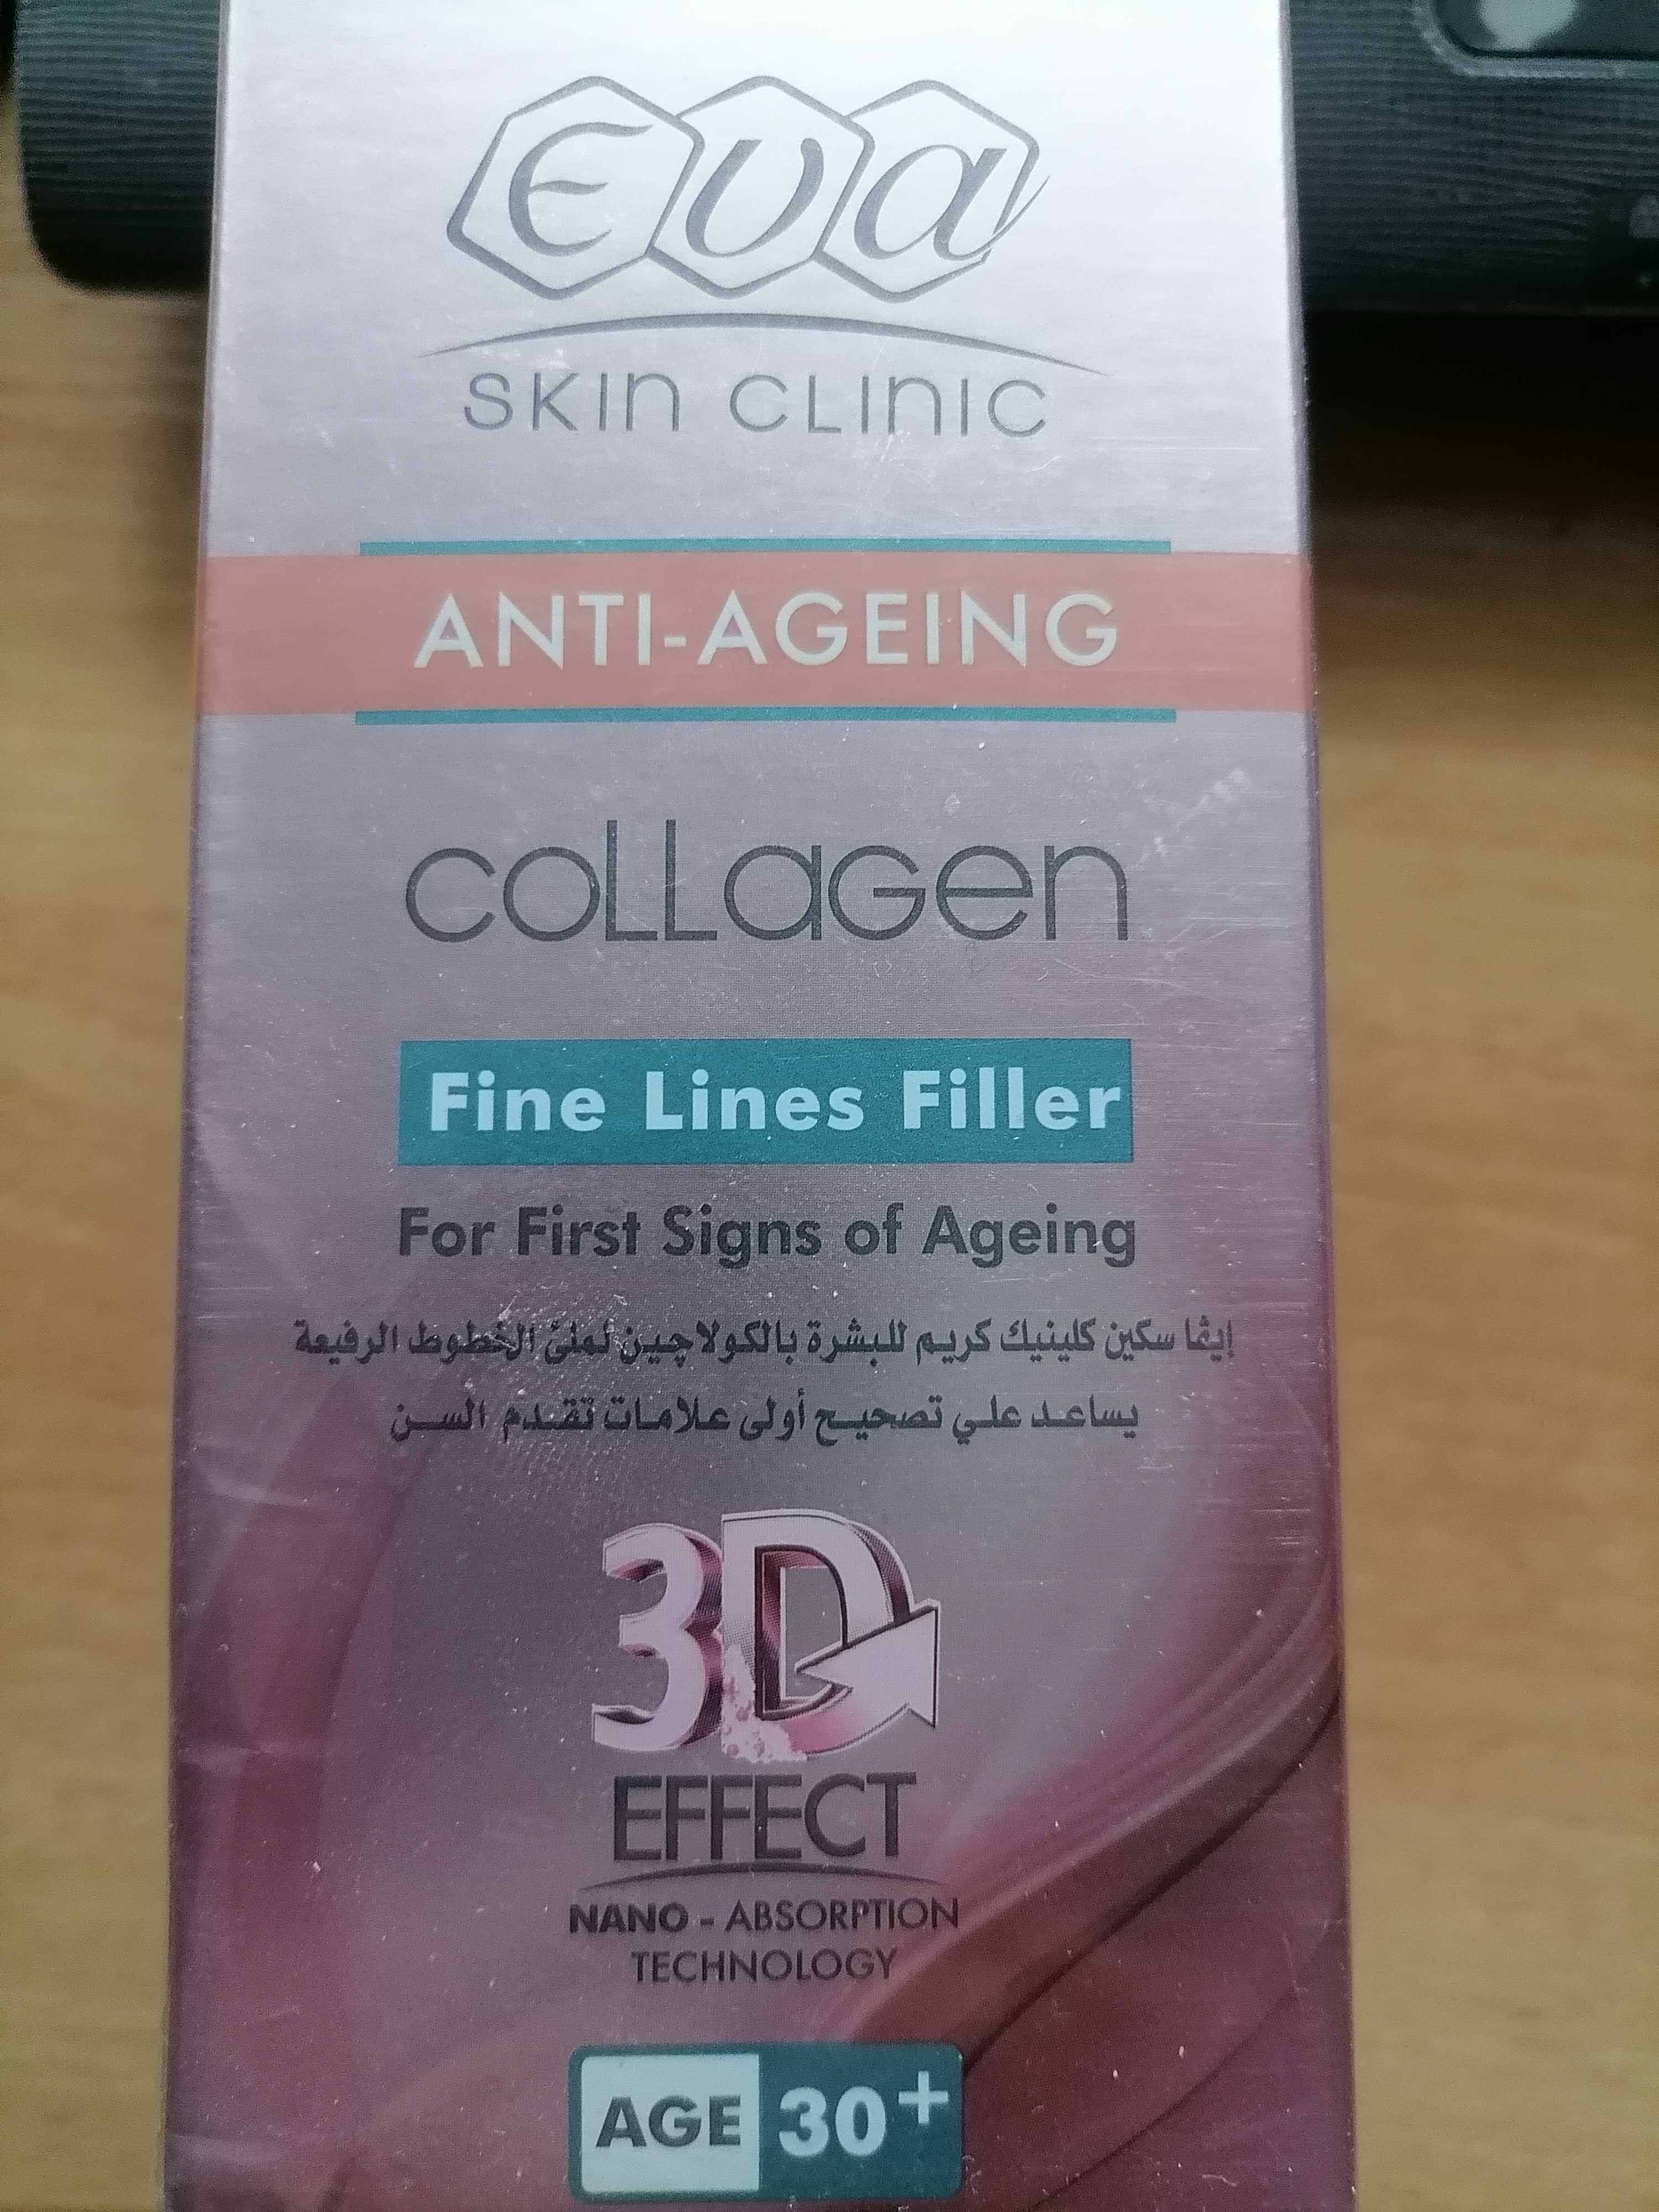 Eva collagen 30+